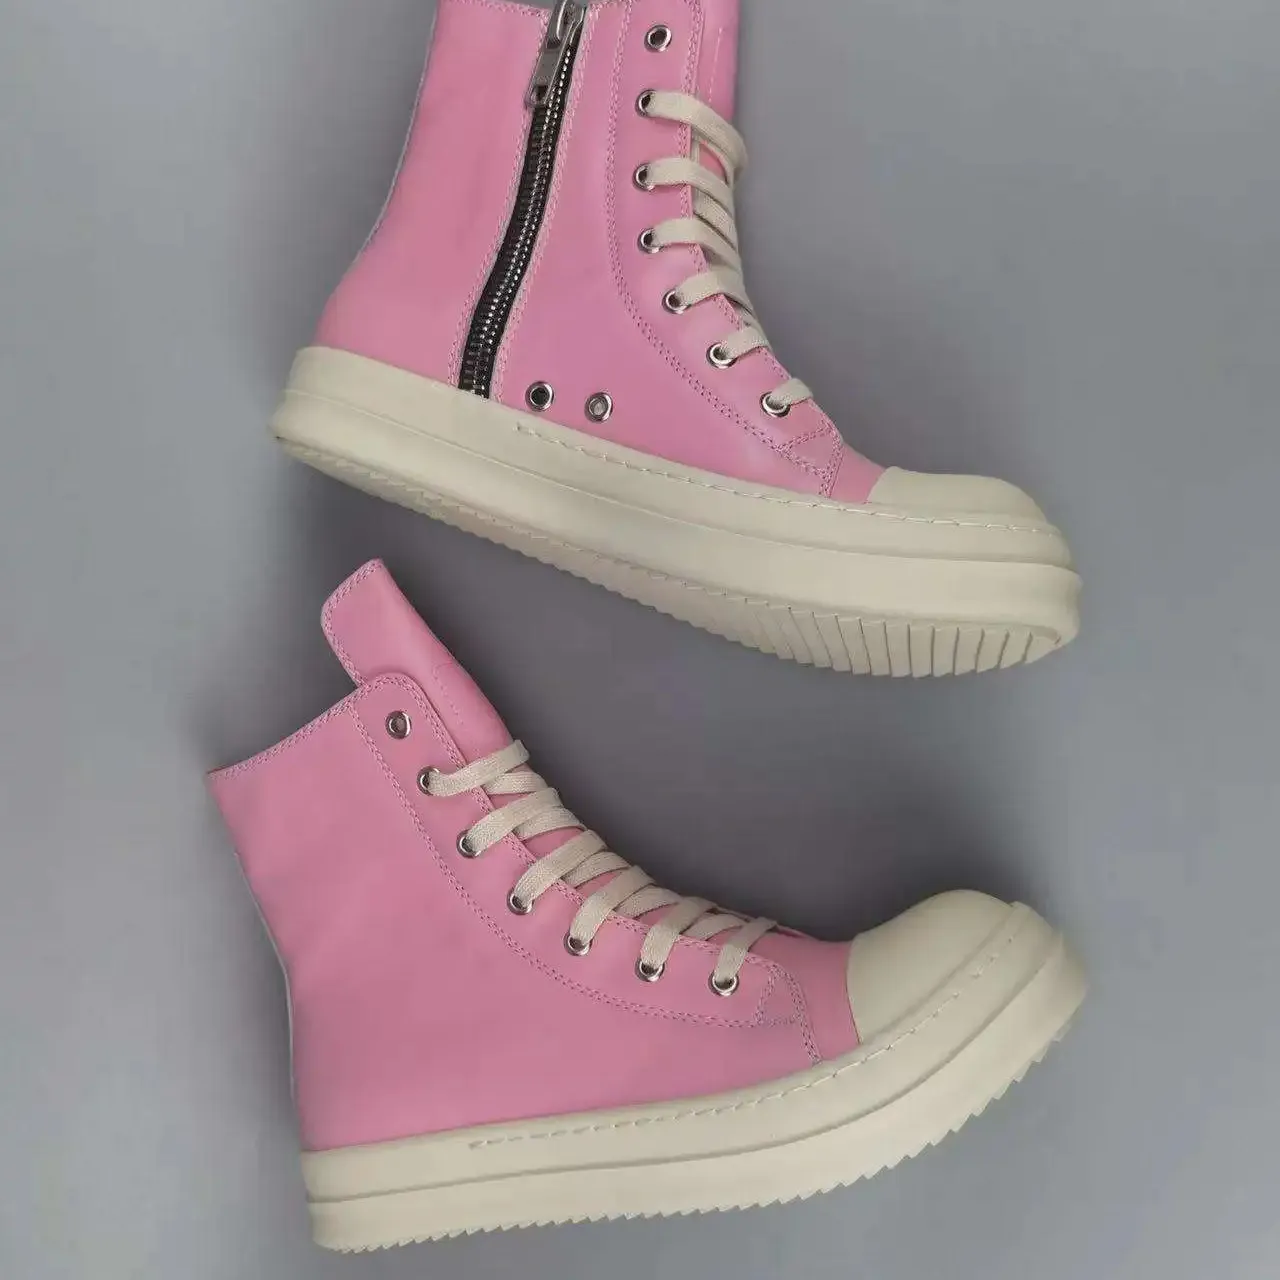 Fabrika dantel-up deri üst kalın ayakkabı için Unisex sıcak kar yüksek kalite çizmeler moda tıknaz yüksek topuk çizmeler